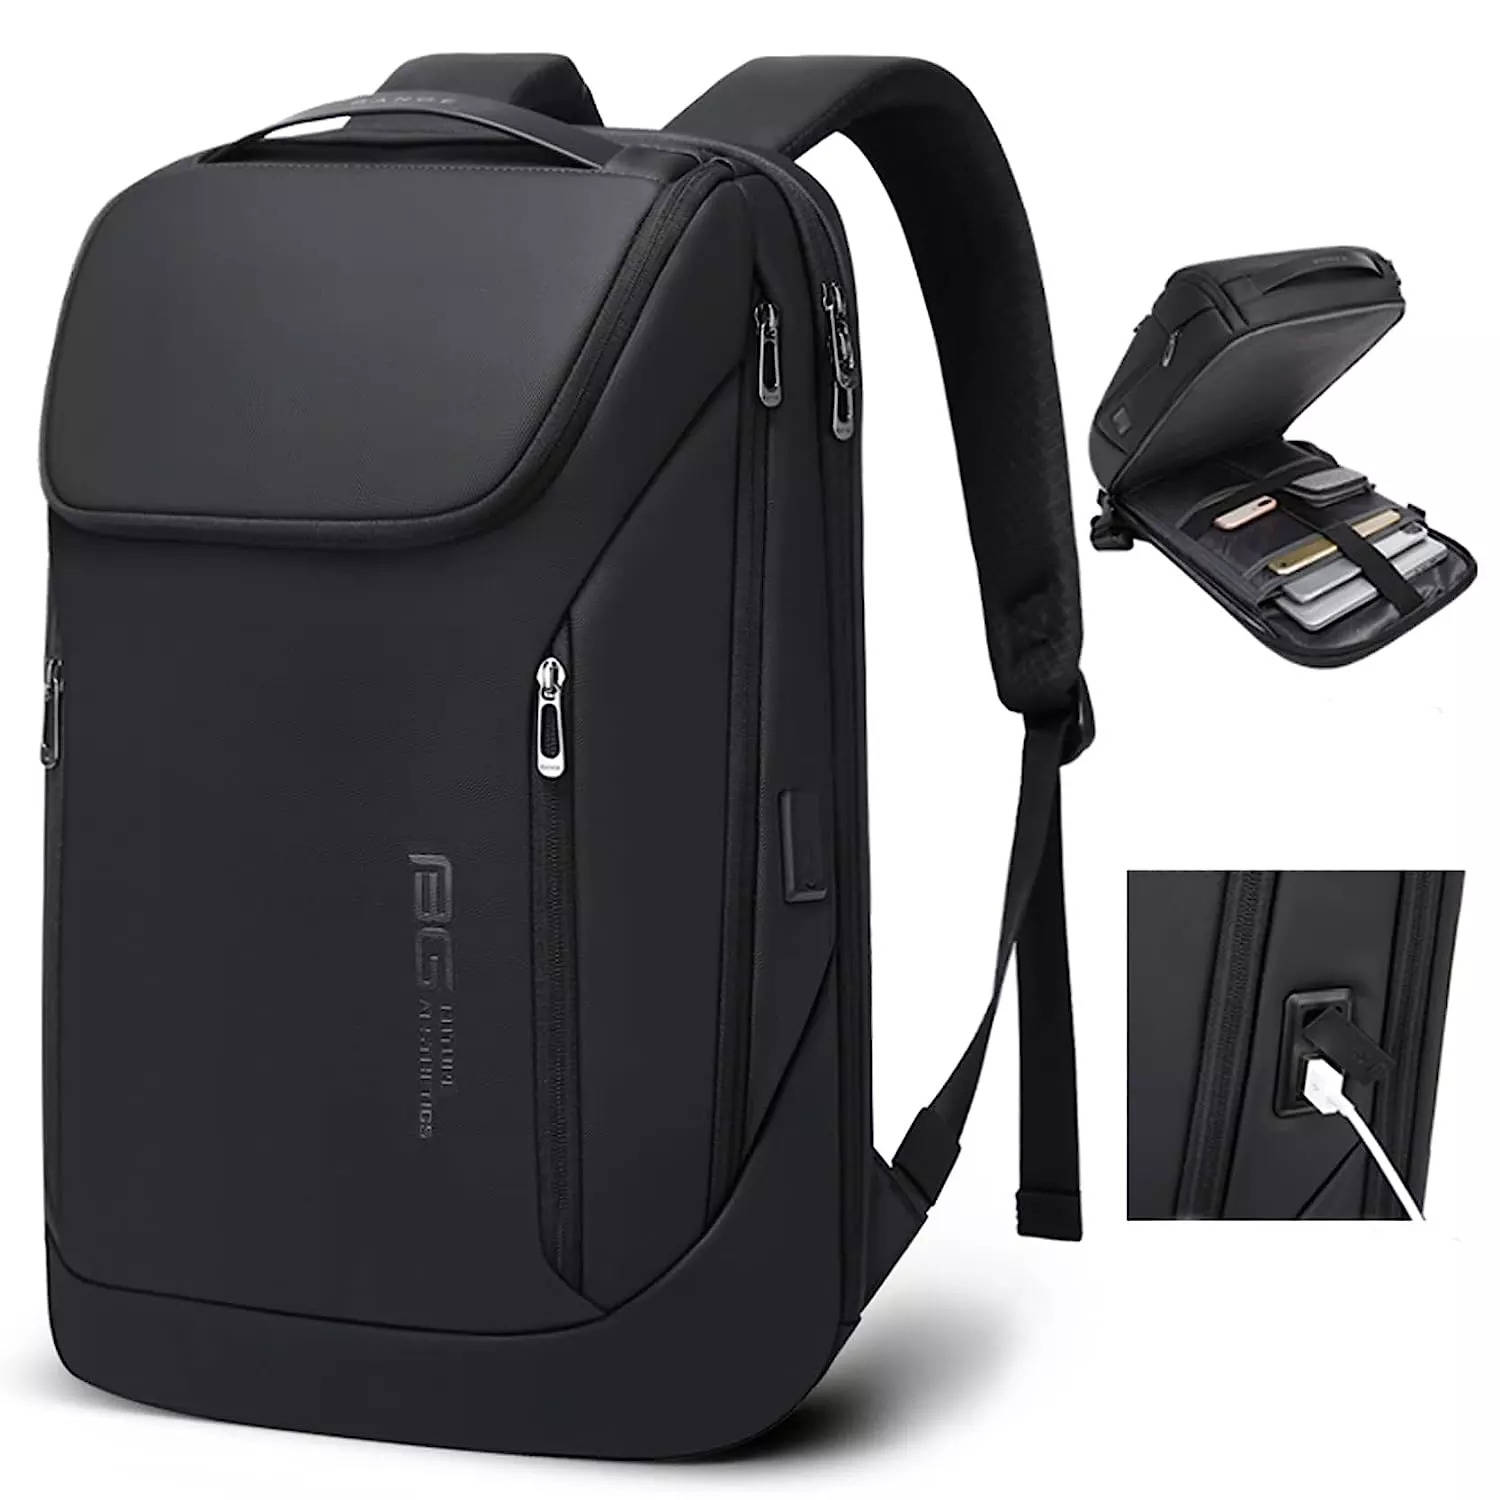 BANGE Men Backpack Business 15.6 Laptop Backpacks with USB